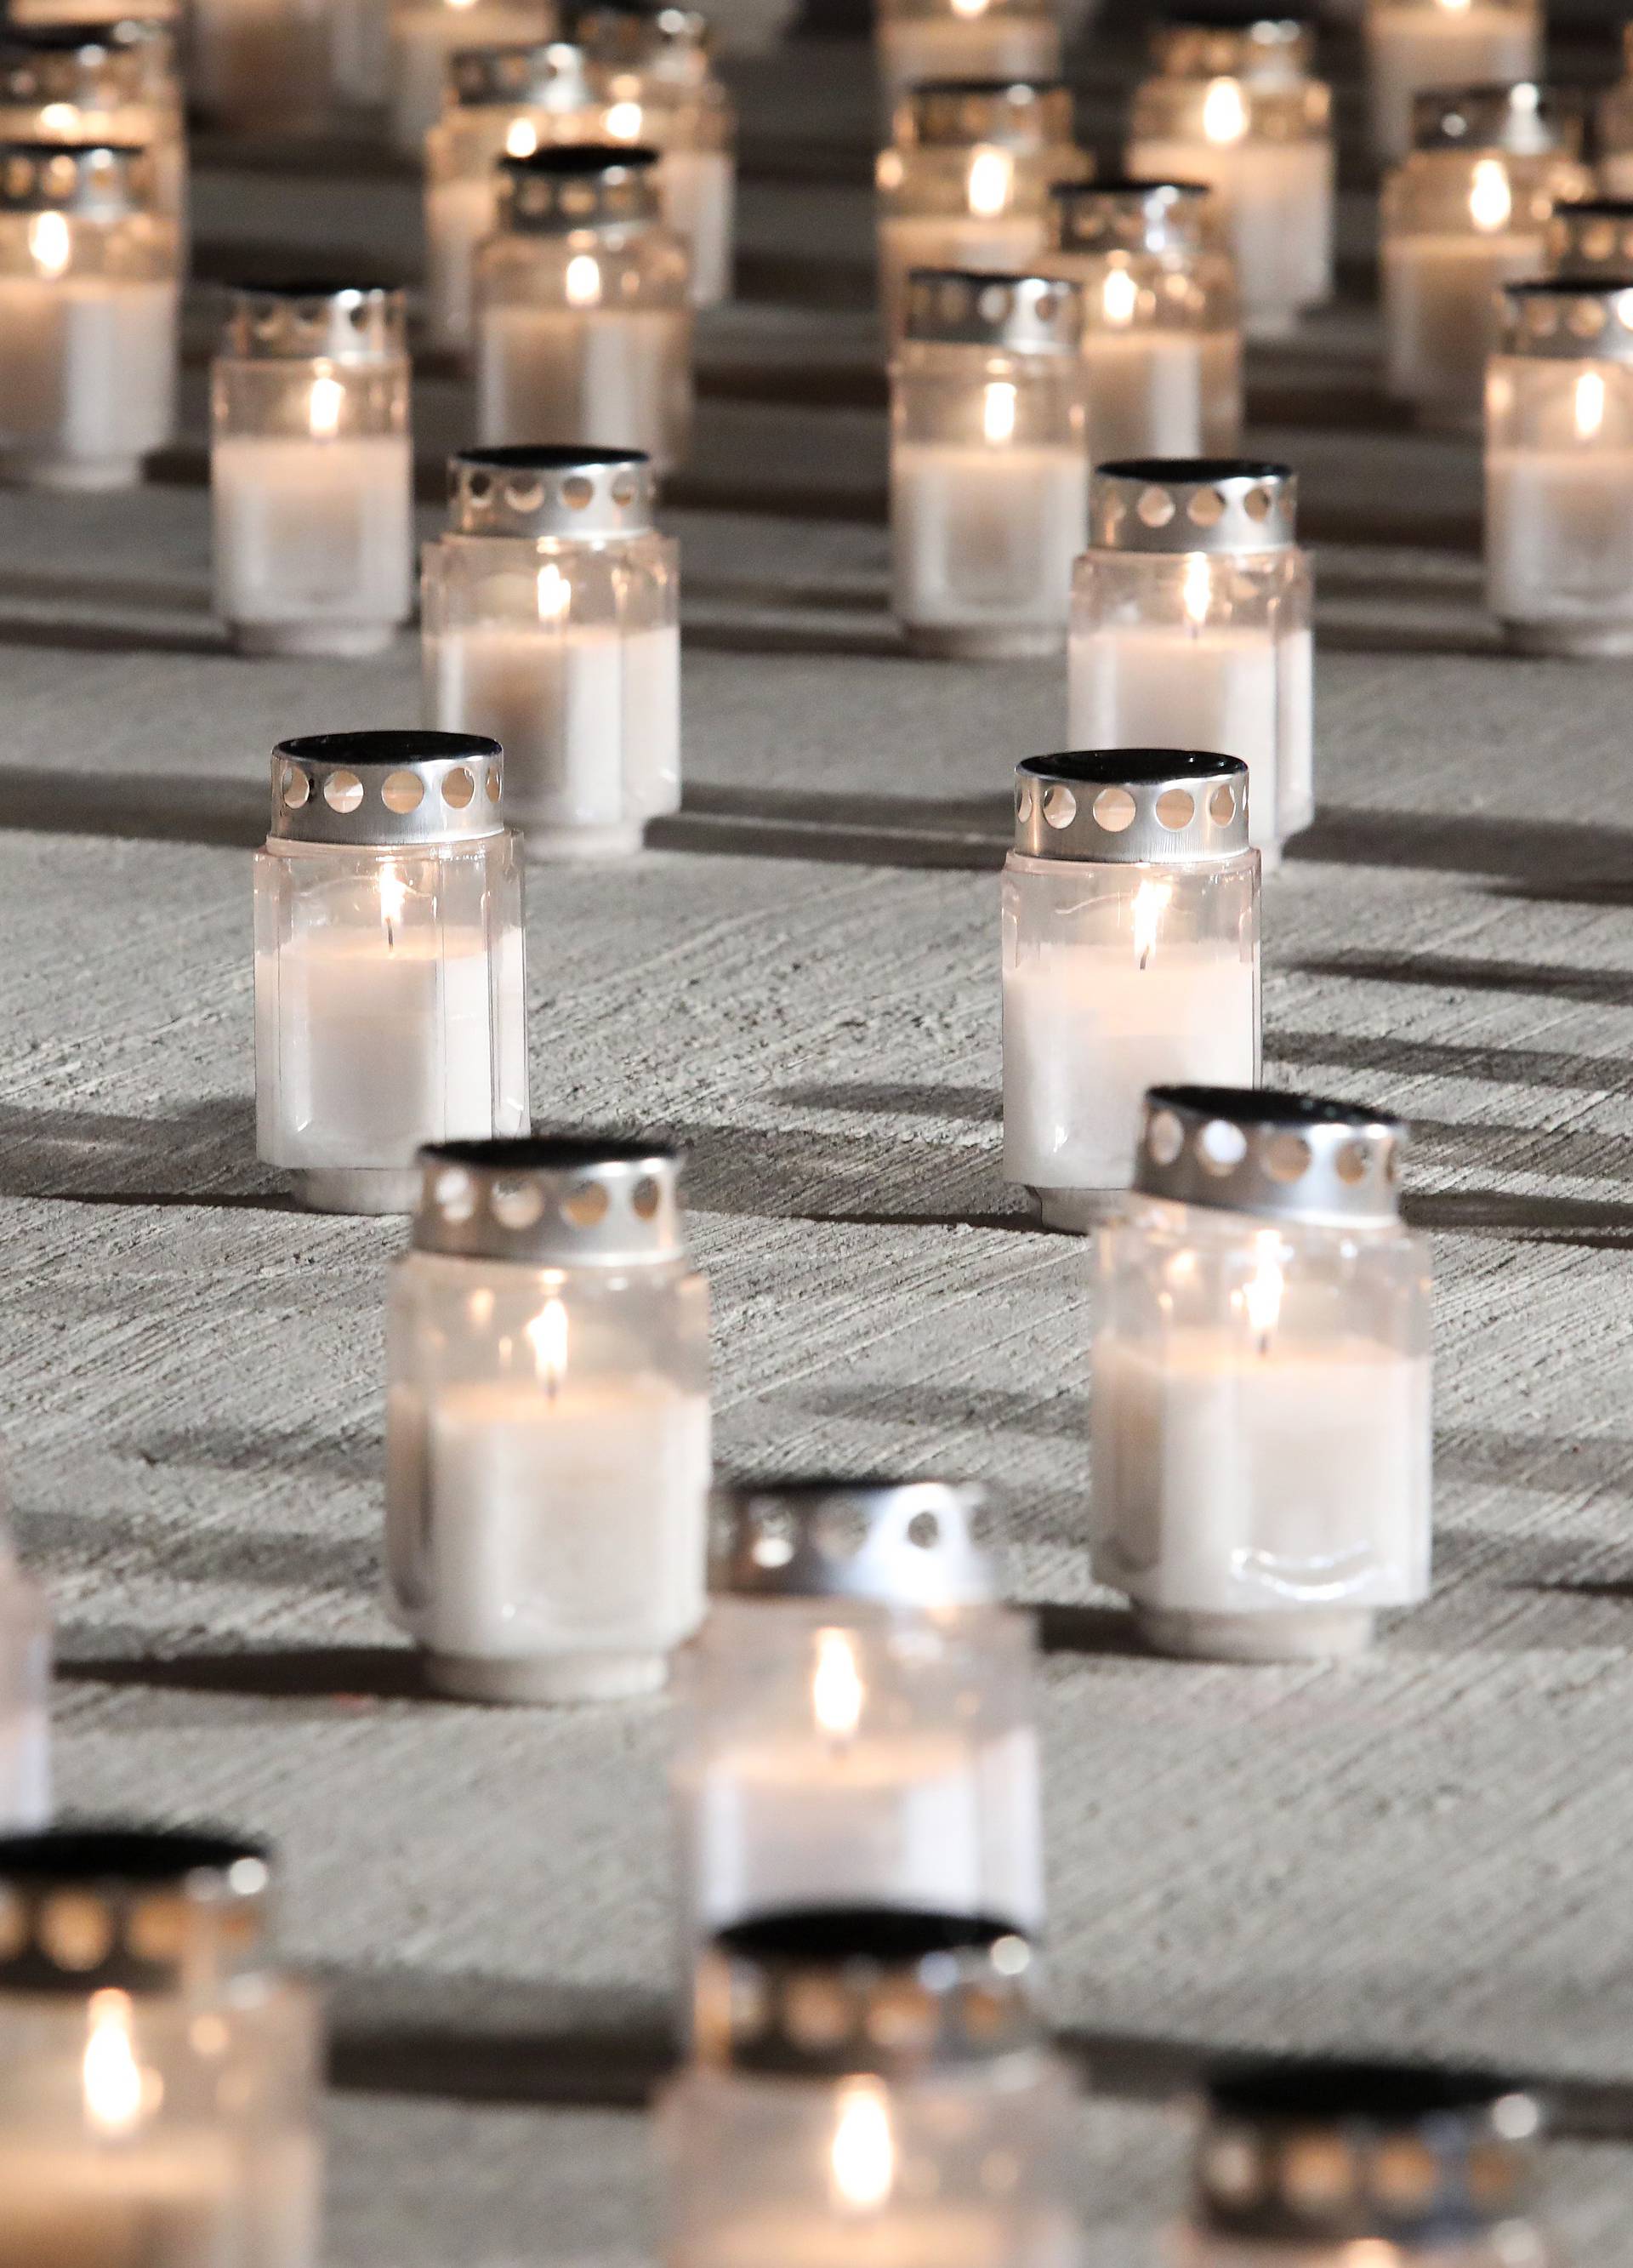 U spomen na žrtvu Vukovara tisuće građana zapalilo svijeće